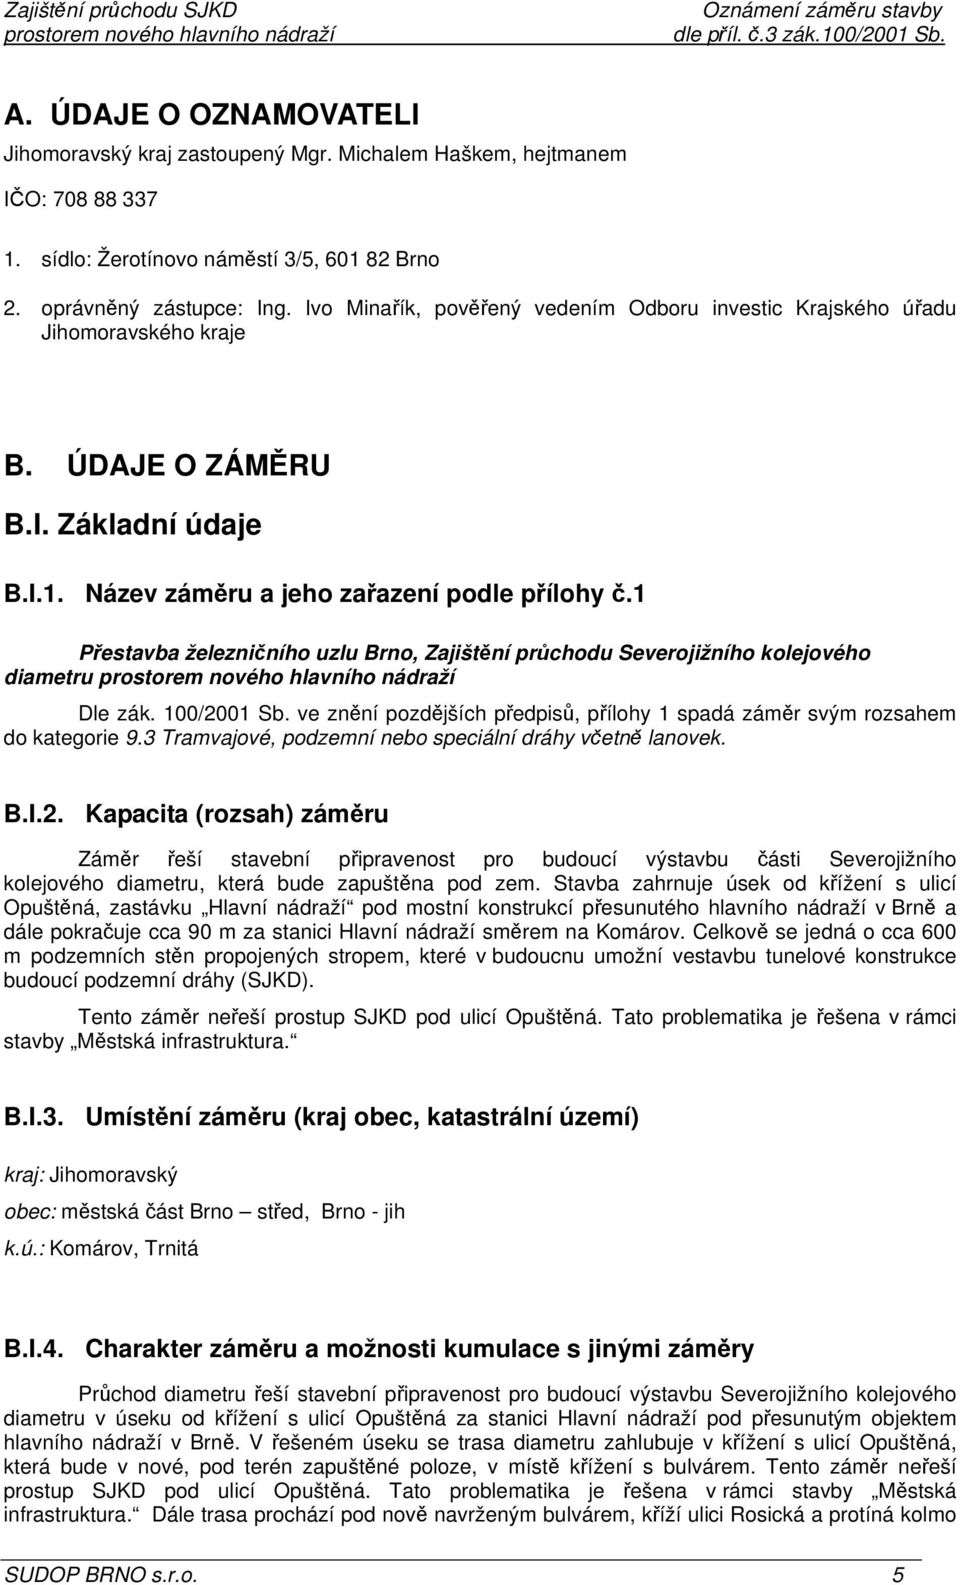 1 Přestavba železničního uzlu Brno, Zajištění průchodu Severojižního kolejového diametru Dle zák. 100/2001 Sb. ve znění pozdějších předpisů, přílohy 1 spadá záměr svým rozsahem do kategorie 9.